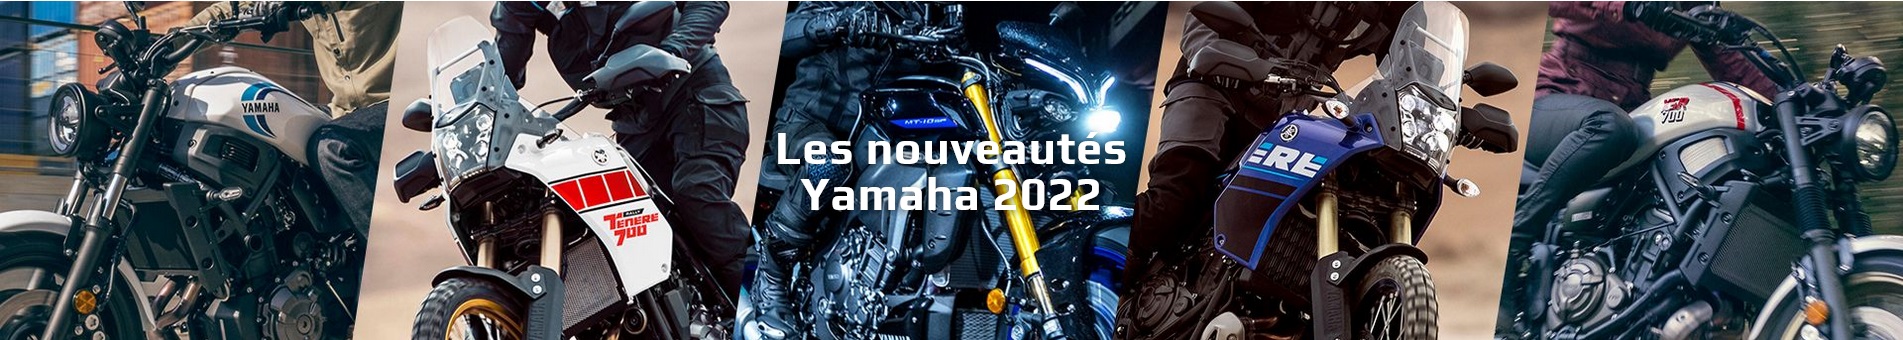 Screenshot 2022 02 15 at 09 28 39 Noveaux modèles Yamaha pour 2022